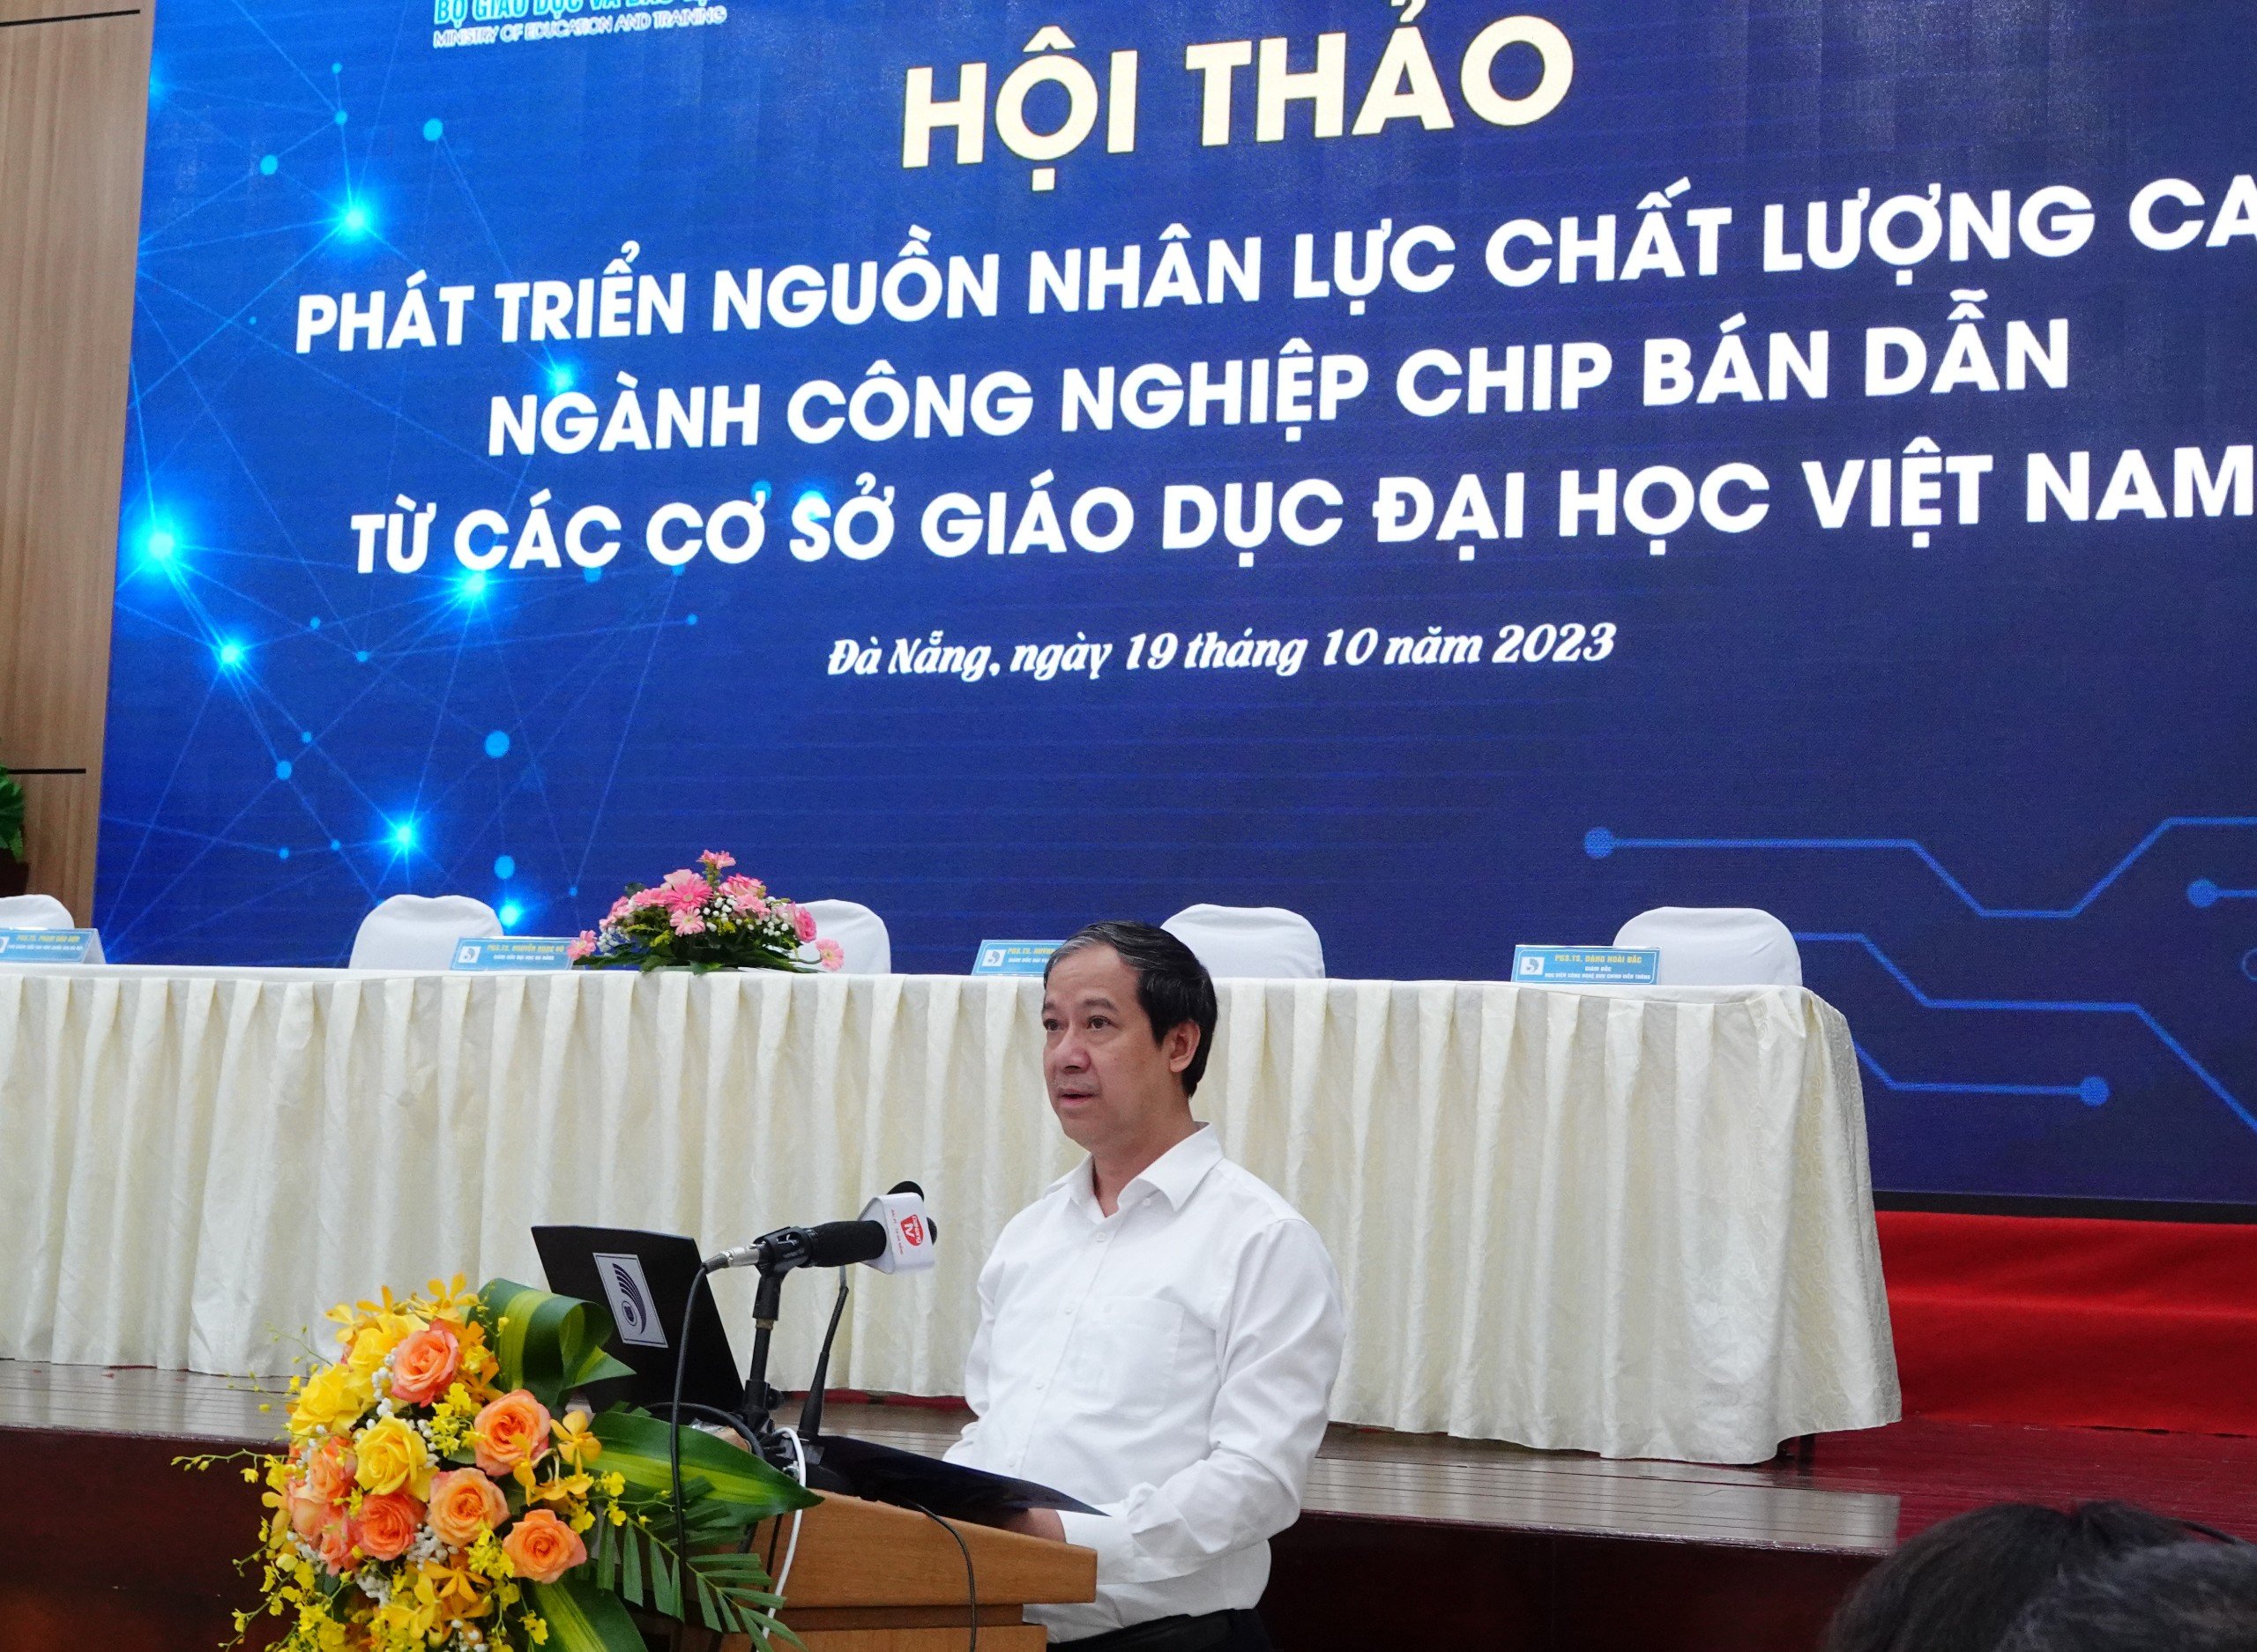 Bộ trưởng Bộ GD&ĐT Nguyễn Kim Sơn phát biểu tại Hội thảo phát triển nguồn nhân lực chất lượng cao ngành công nghiệp chip bán dẫn từ các cơ sở giáo dục đại học Việt Nam.